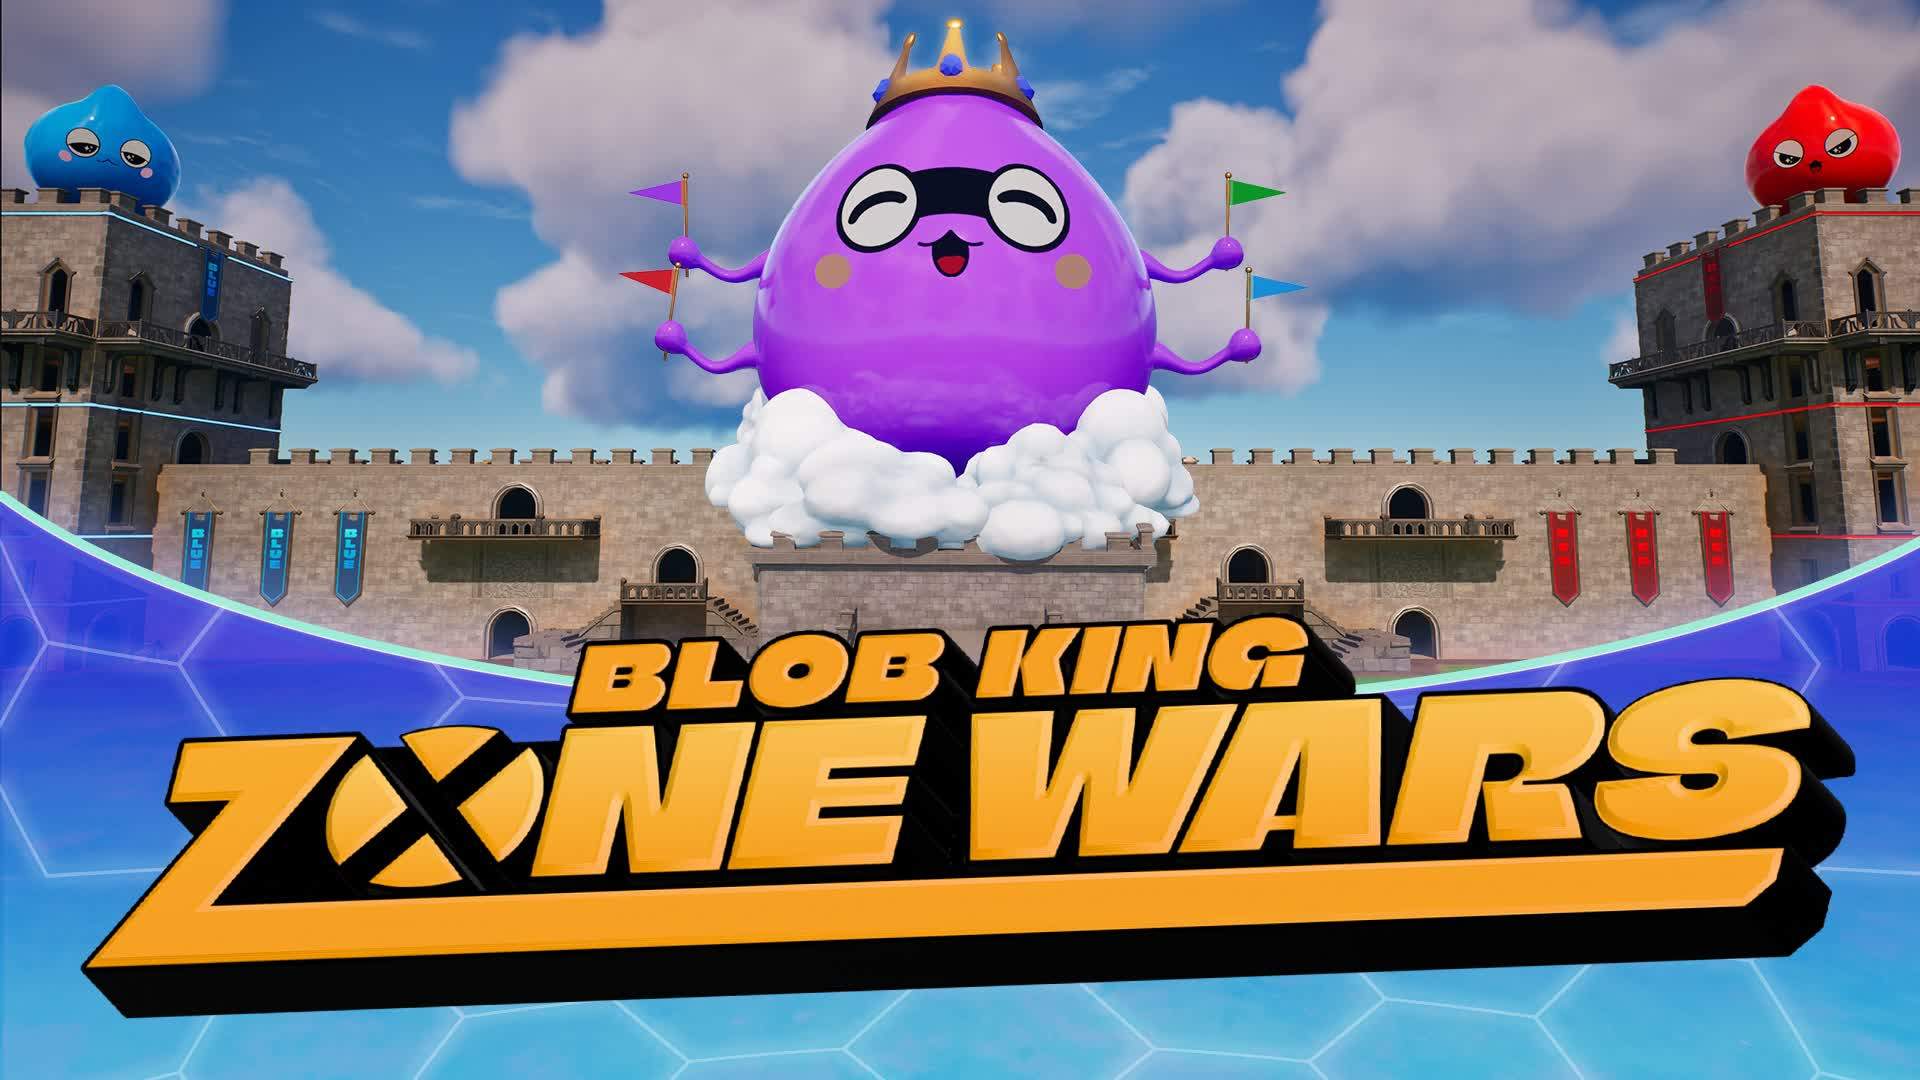 Blob King Zone Wars